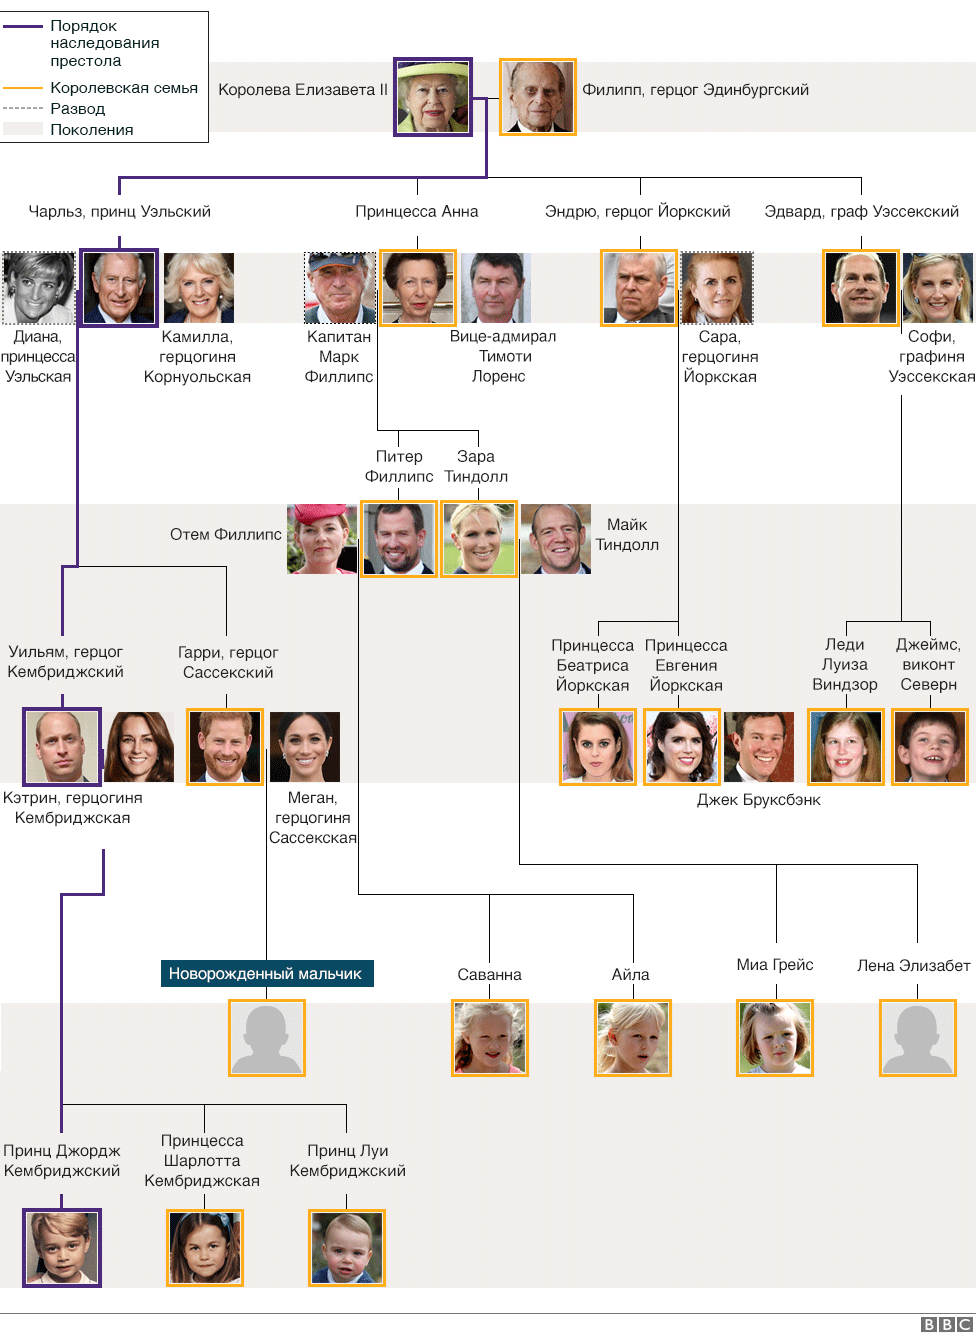 Семейное древо королевской семьи